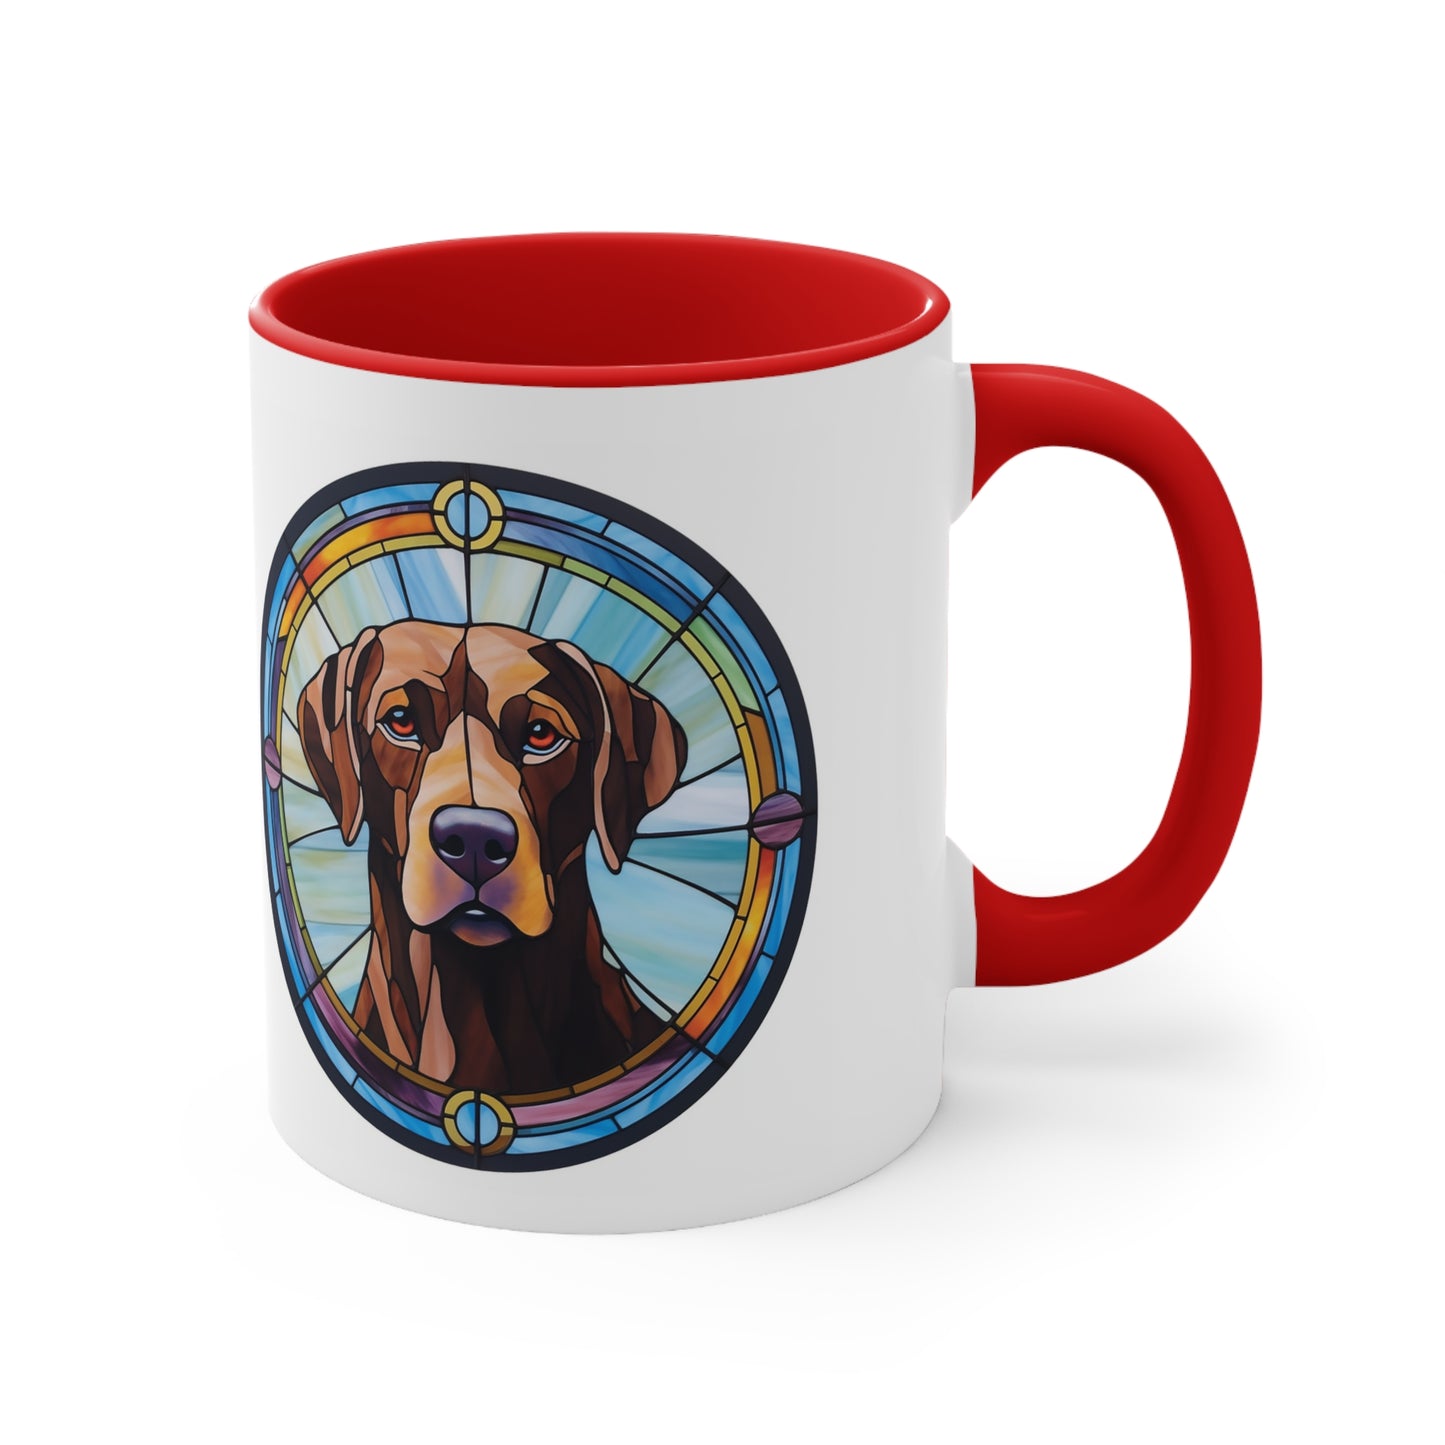 LABRADOR RETRIEVER MUG - Dog Breeds Mugs - Red, Black, Pink, Blue and Navy - Free Shipping